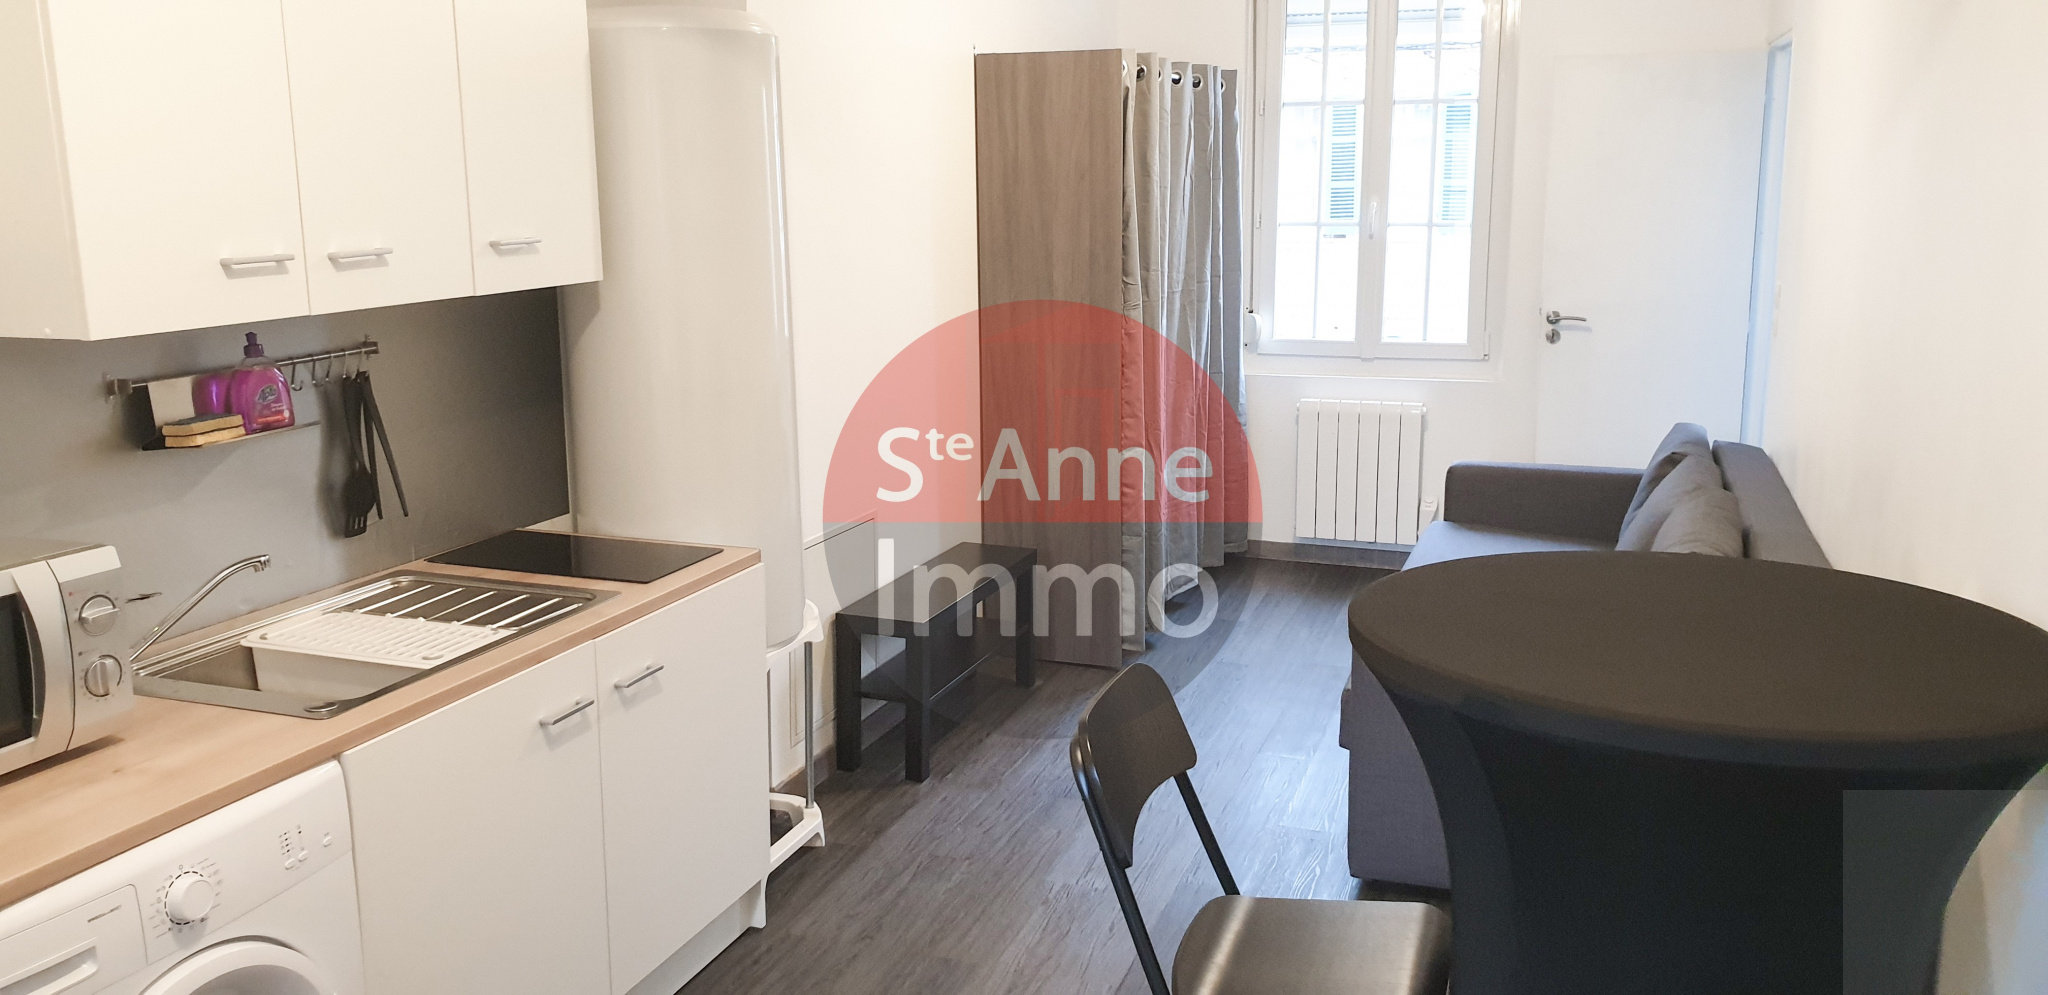 Immo80 – L'immobilier à Amiens et dans la Somme-Immeuble de rapport – Quartier La Hotoie – 6 appartements – 195m2